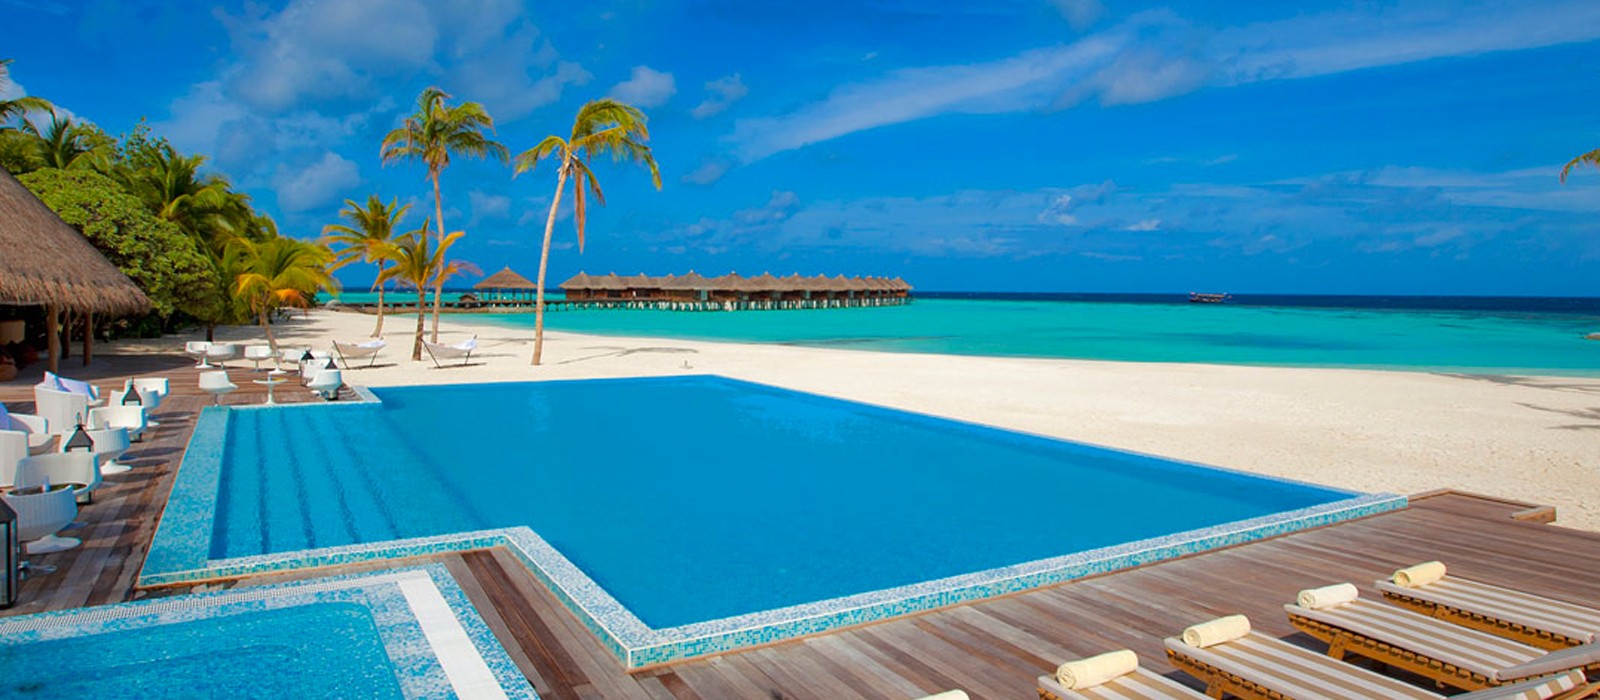 PD Header - Luxury Maldives Honeymoons - Maafushivaru - pool